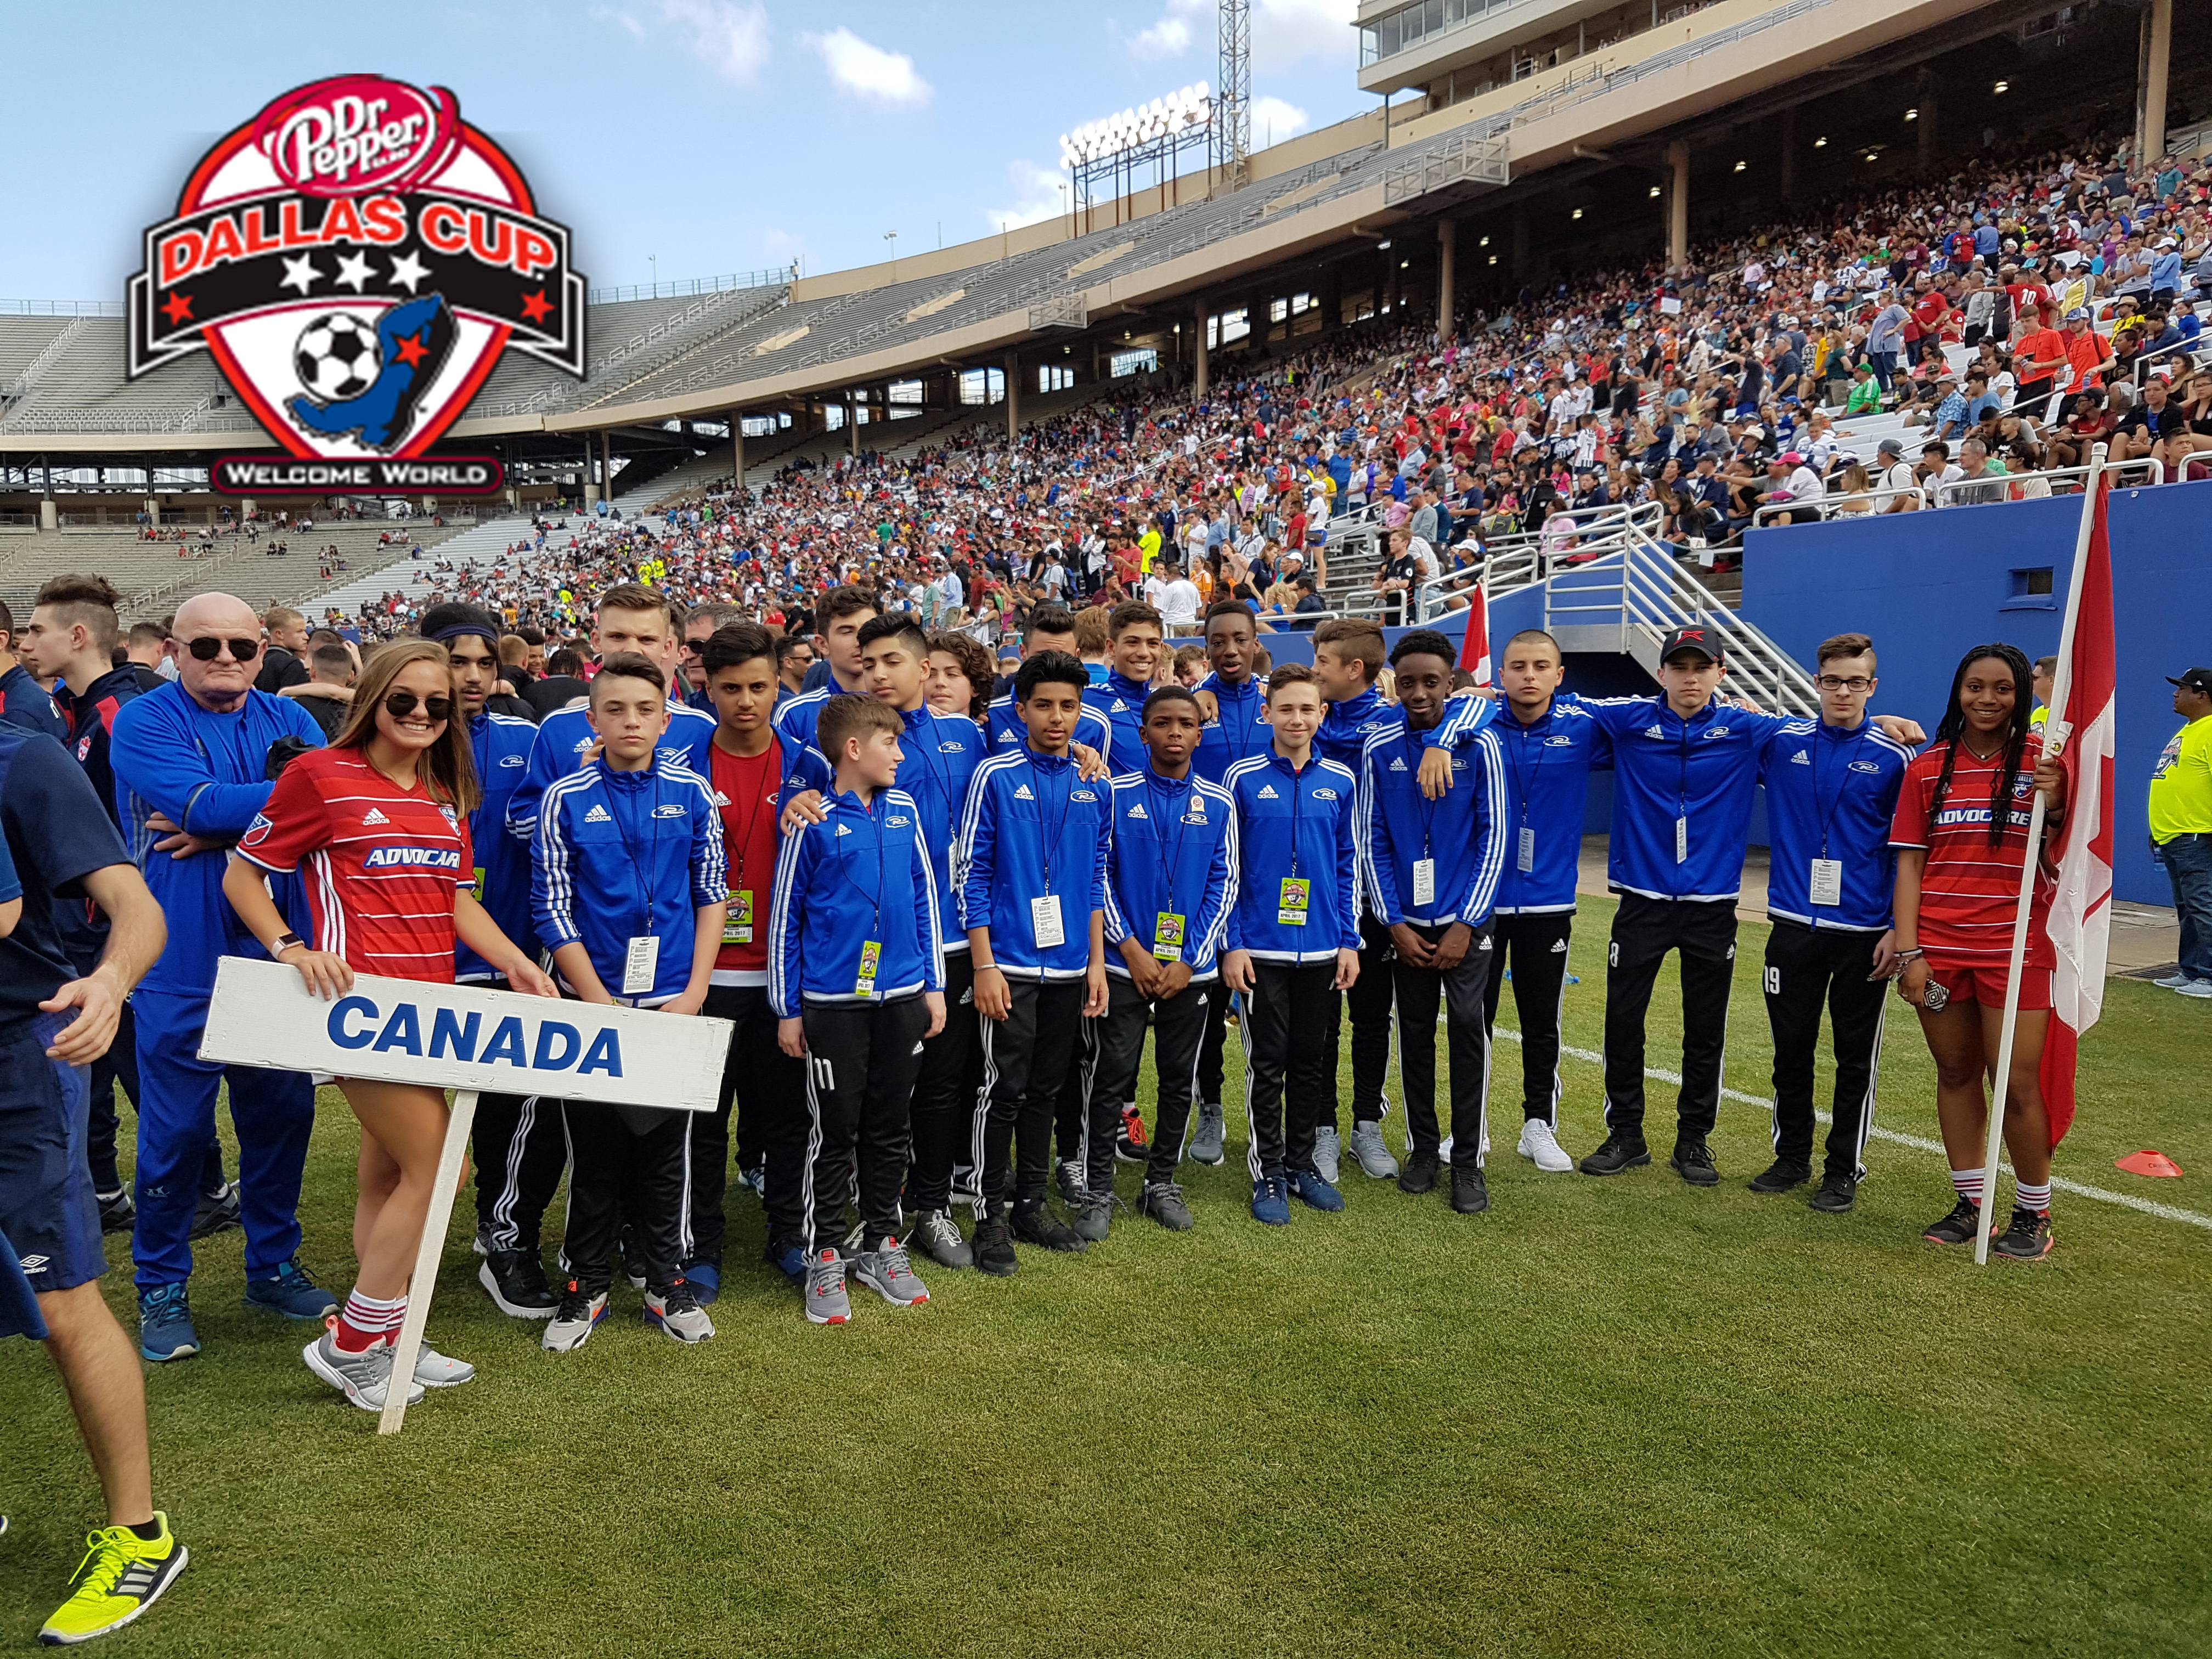 Rush Canada Advances to Dallas Cup Semi-Final - Soccer Academy in